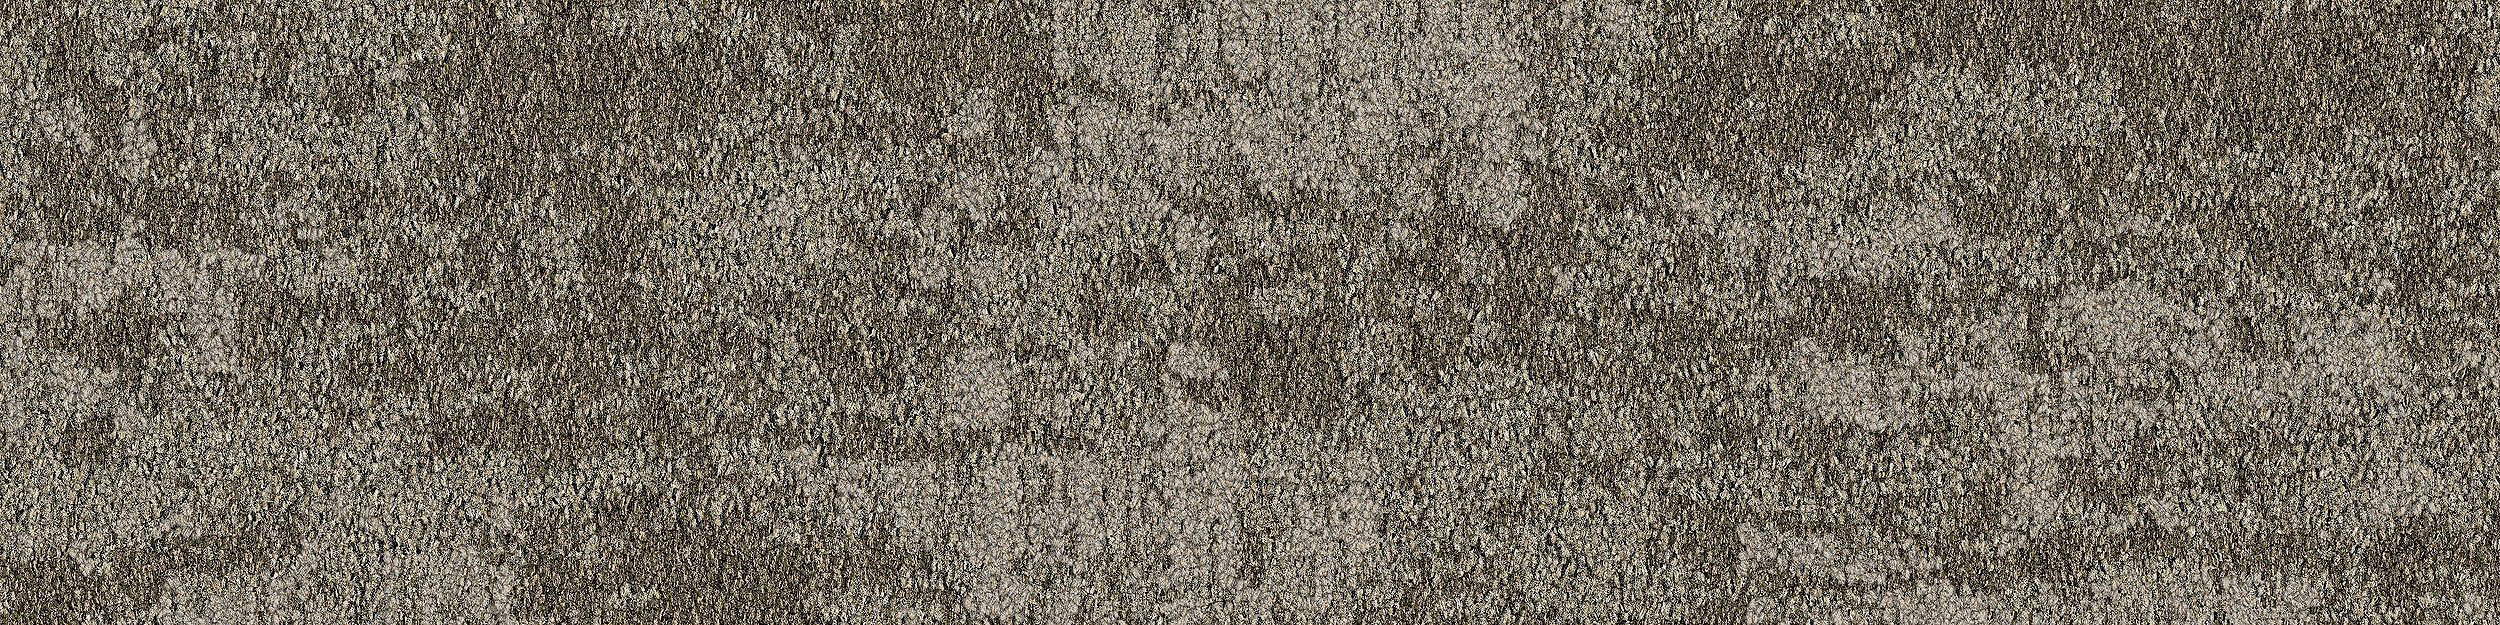 Just Deserts Carpet Tile in Yucca image number 5